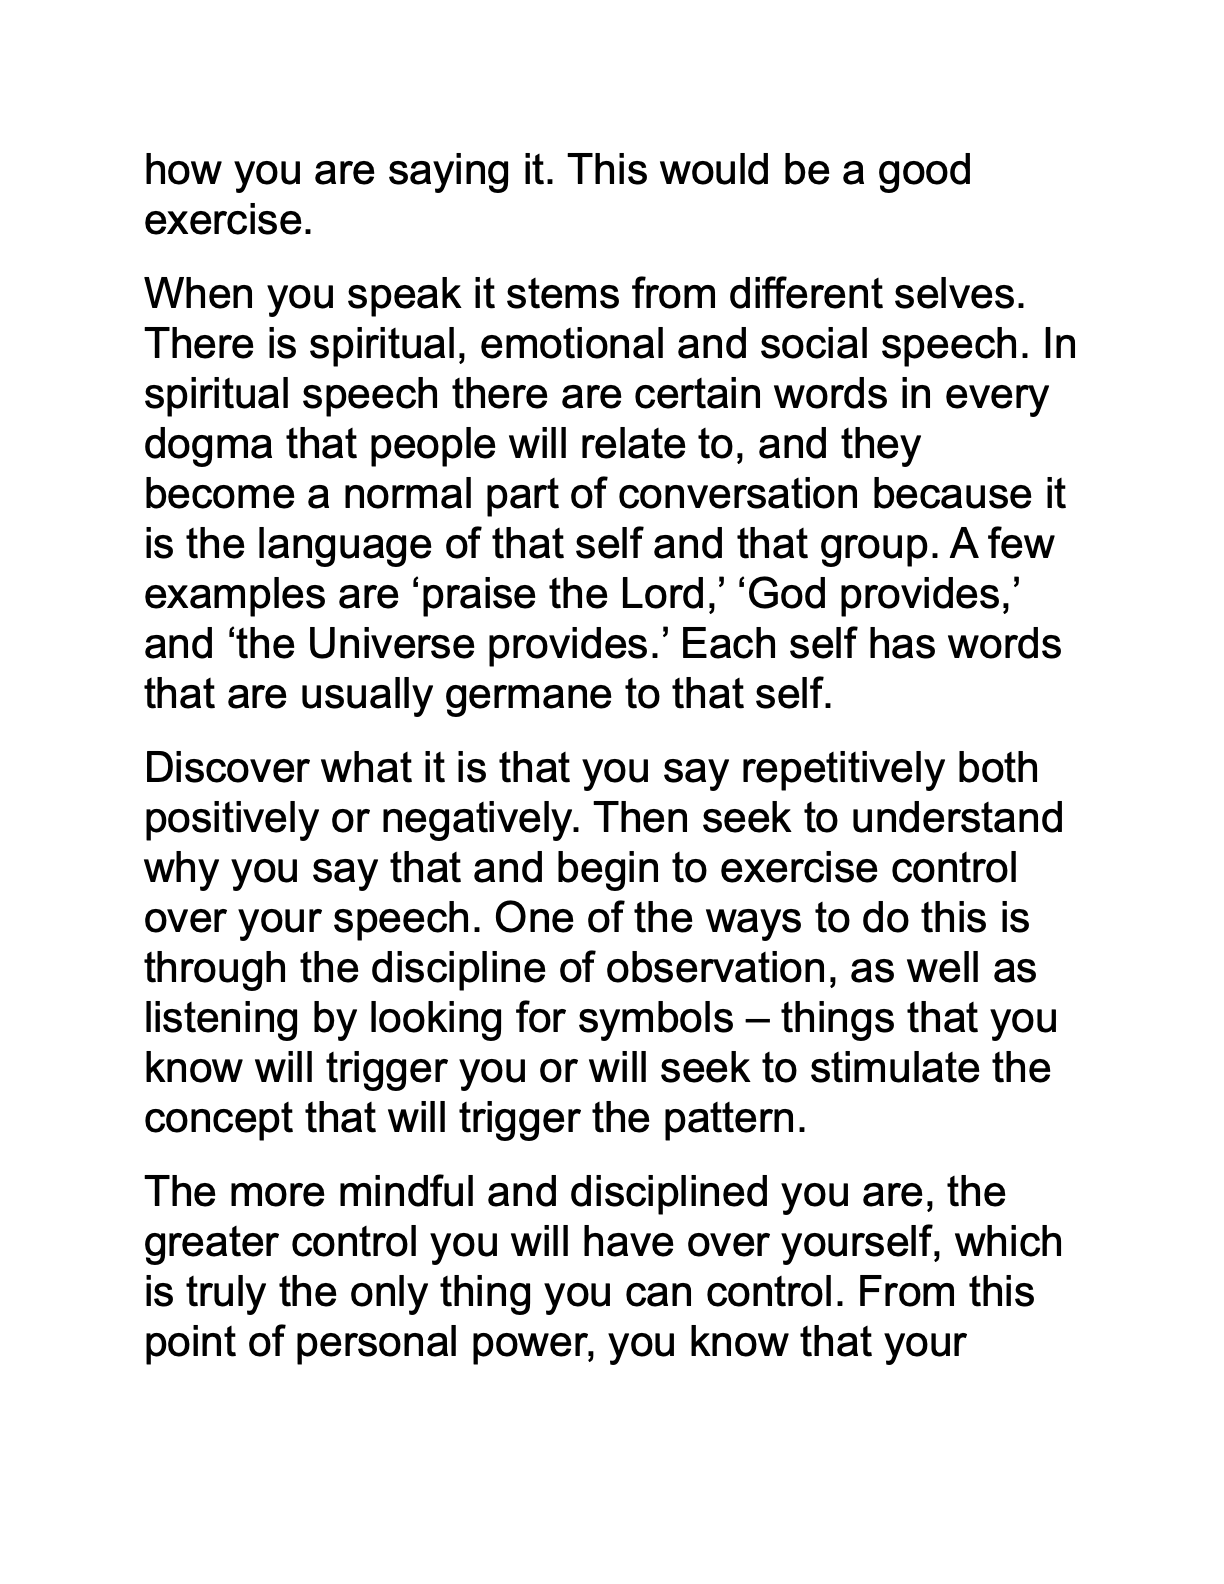 Discipline of Speaking